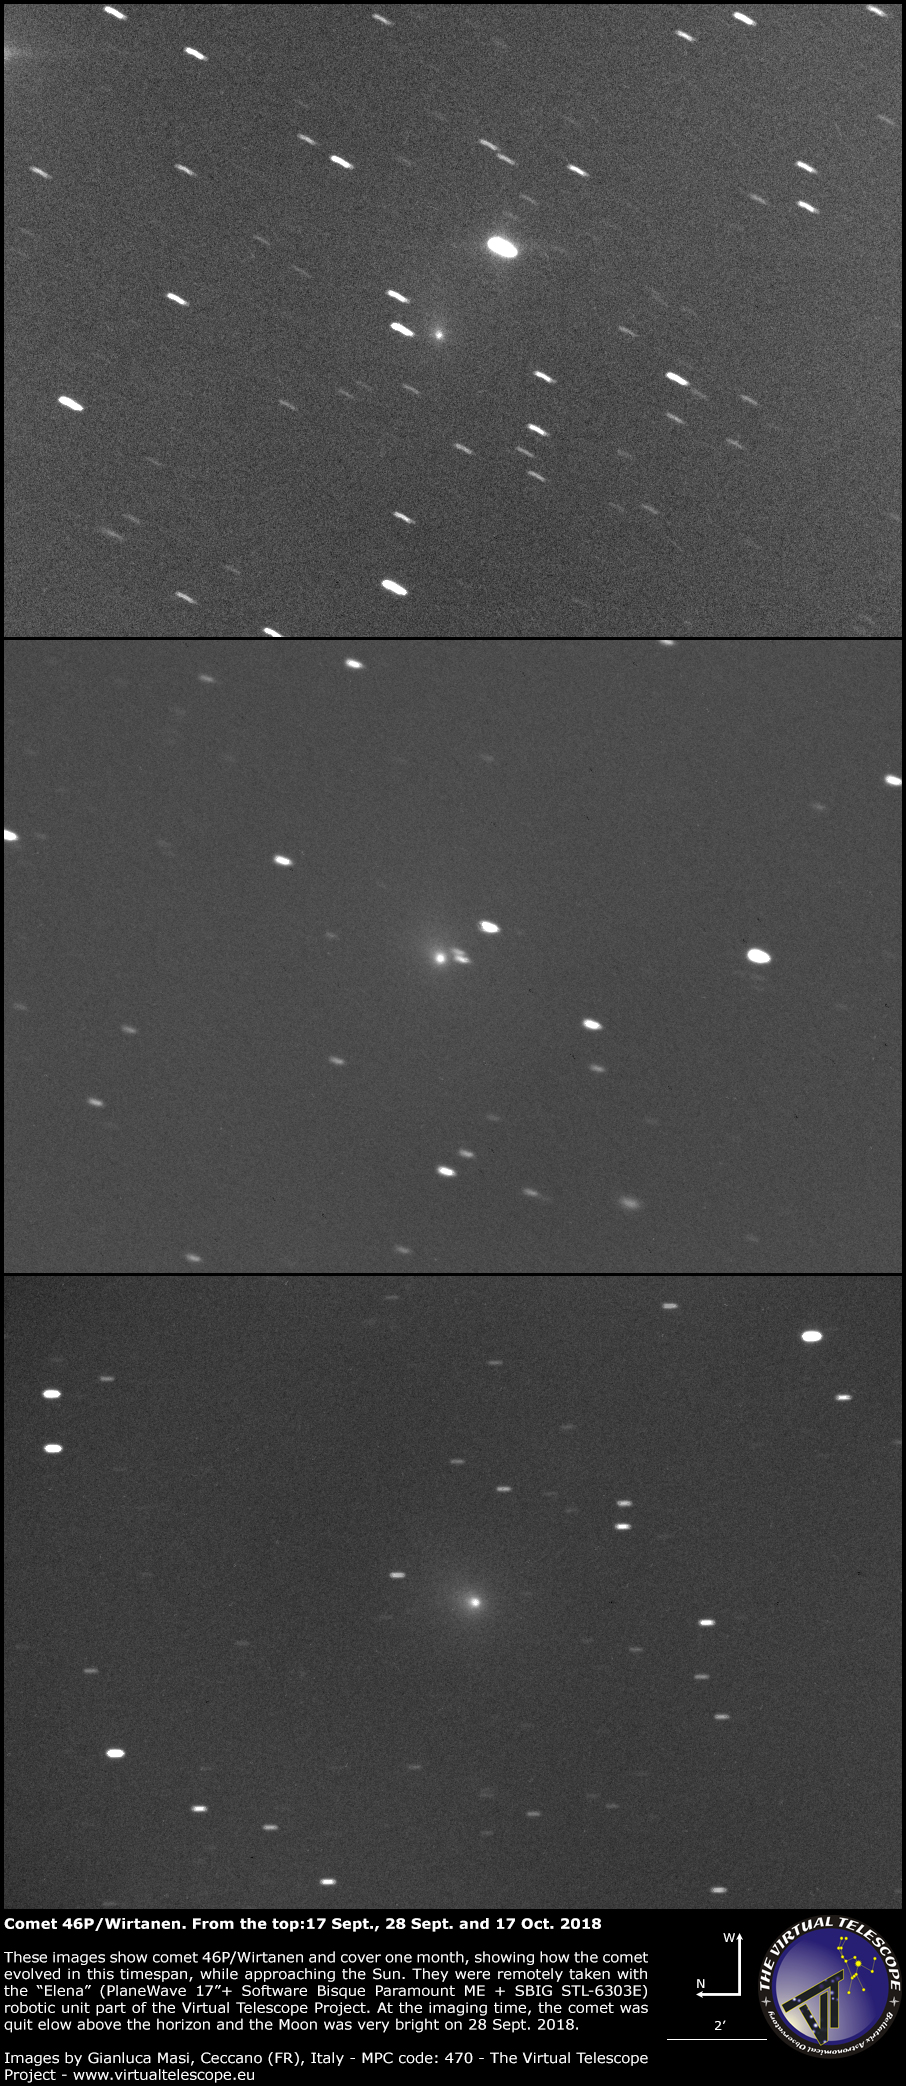 Comet 46P/Wirtanen: 17, 28 Sept. and 17 Oct. 2018